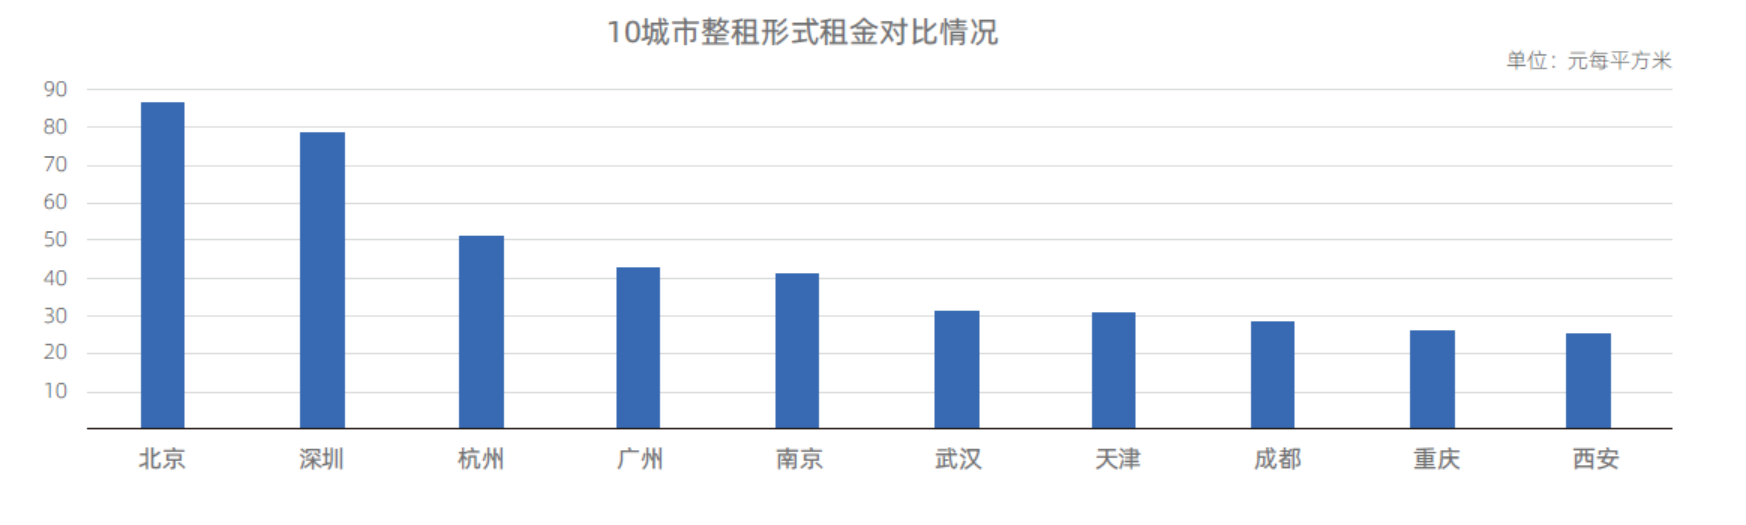 人才引进政策吸引下  毕业季新一线城市租房交易量增速高于一线城市-中国网地产